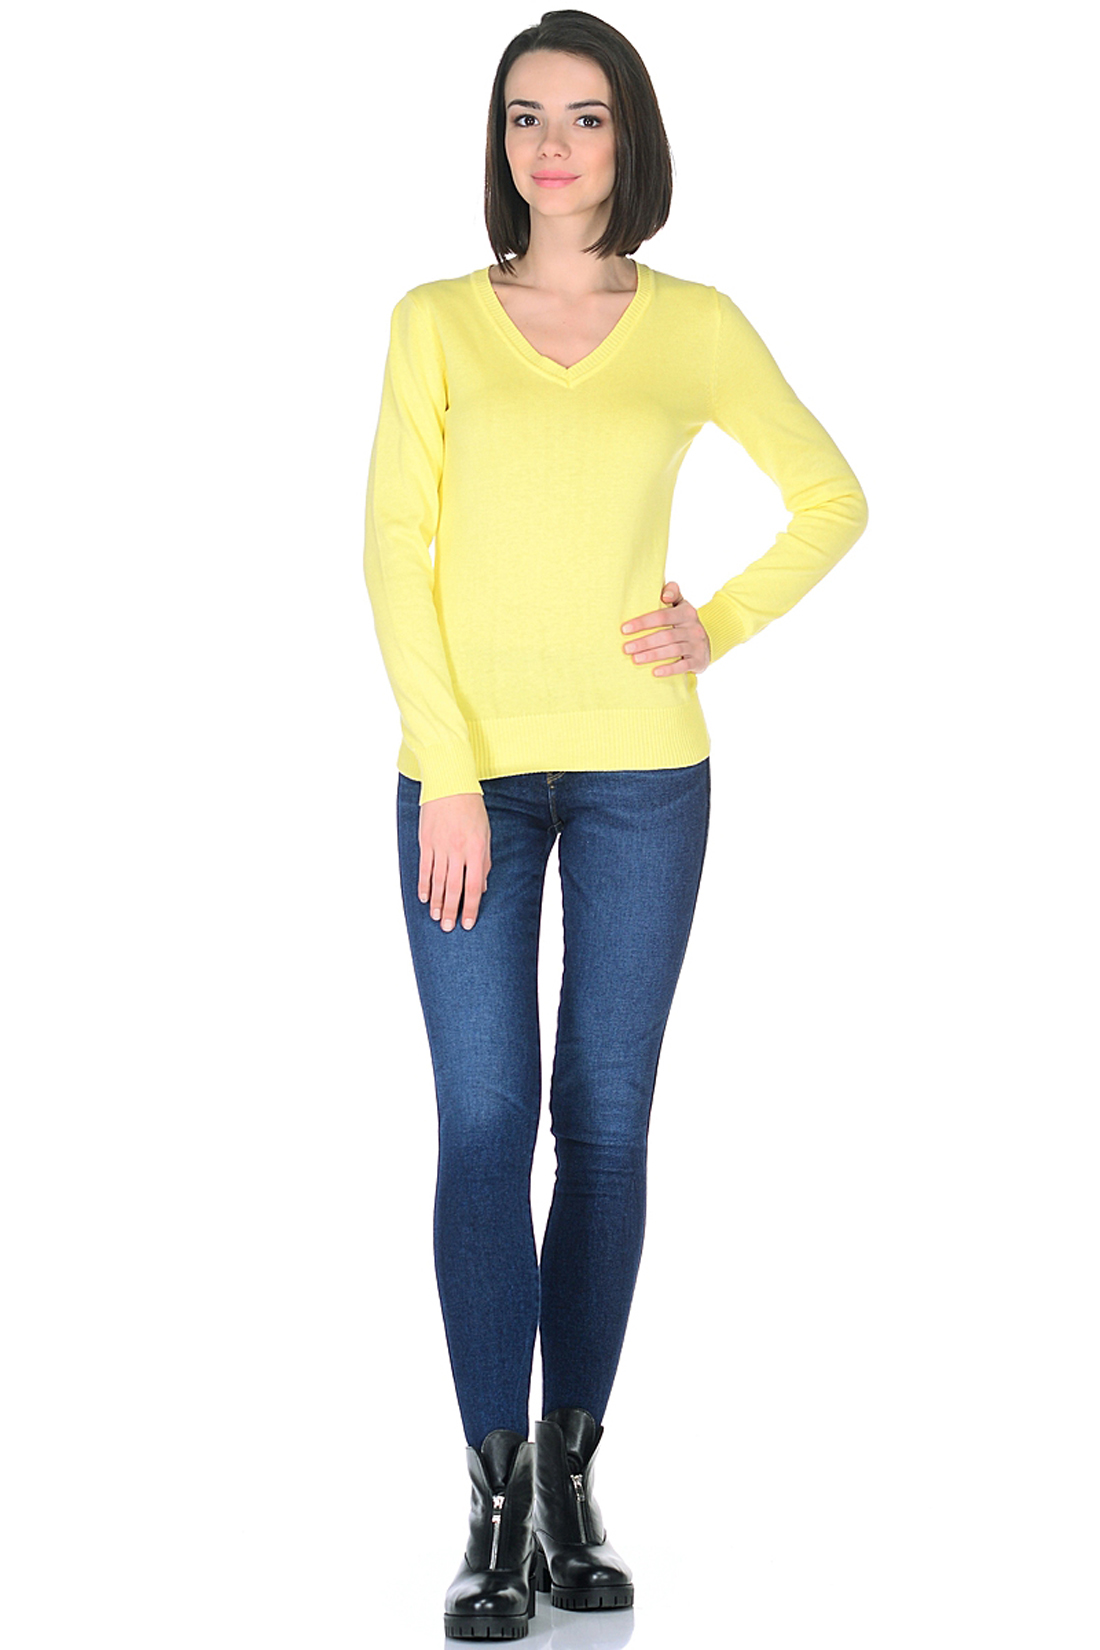 Базовый пуловер (арт. baon B138201), размер XL, цвет желтый Базовый пуловер (арт. baon B138201) - фото 3